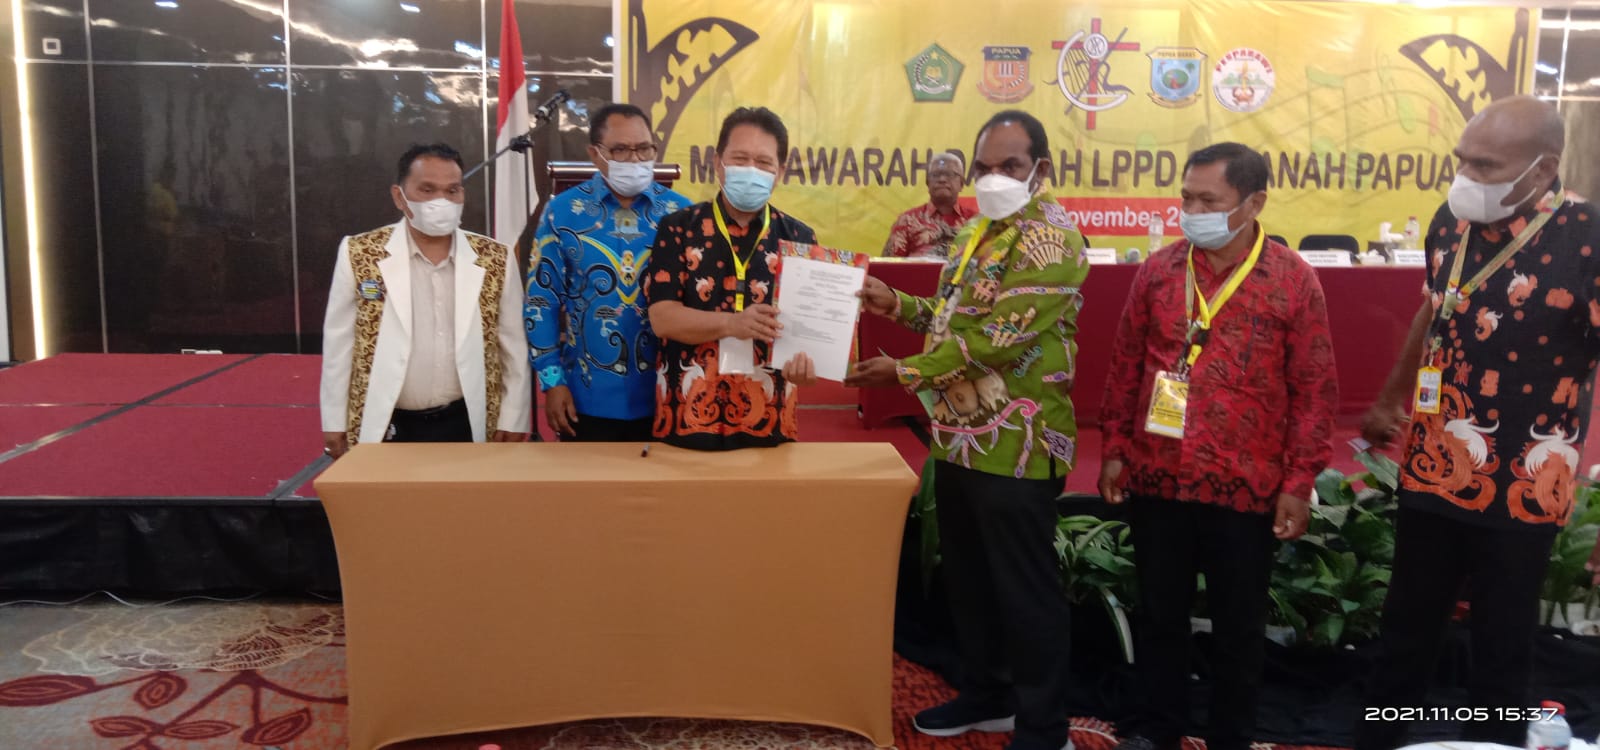 Ketua LPPD Papua, Elia Loupaty menyerahkan SK penetapan tuan rumah Pesparawi XIV kepada Bupati Keerom, Piter Gusbager.